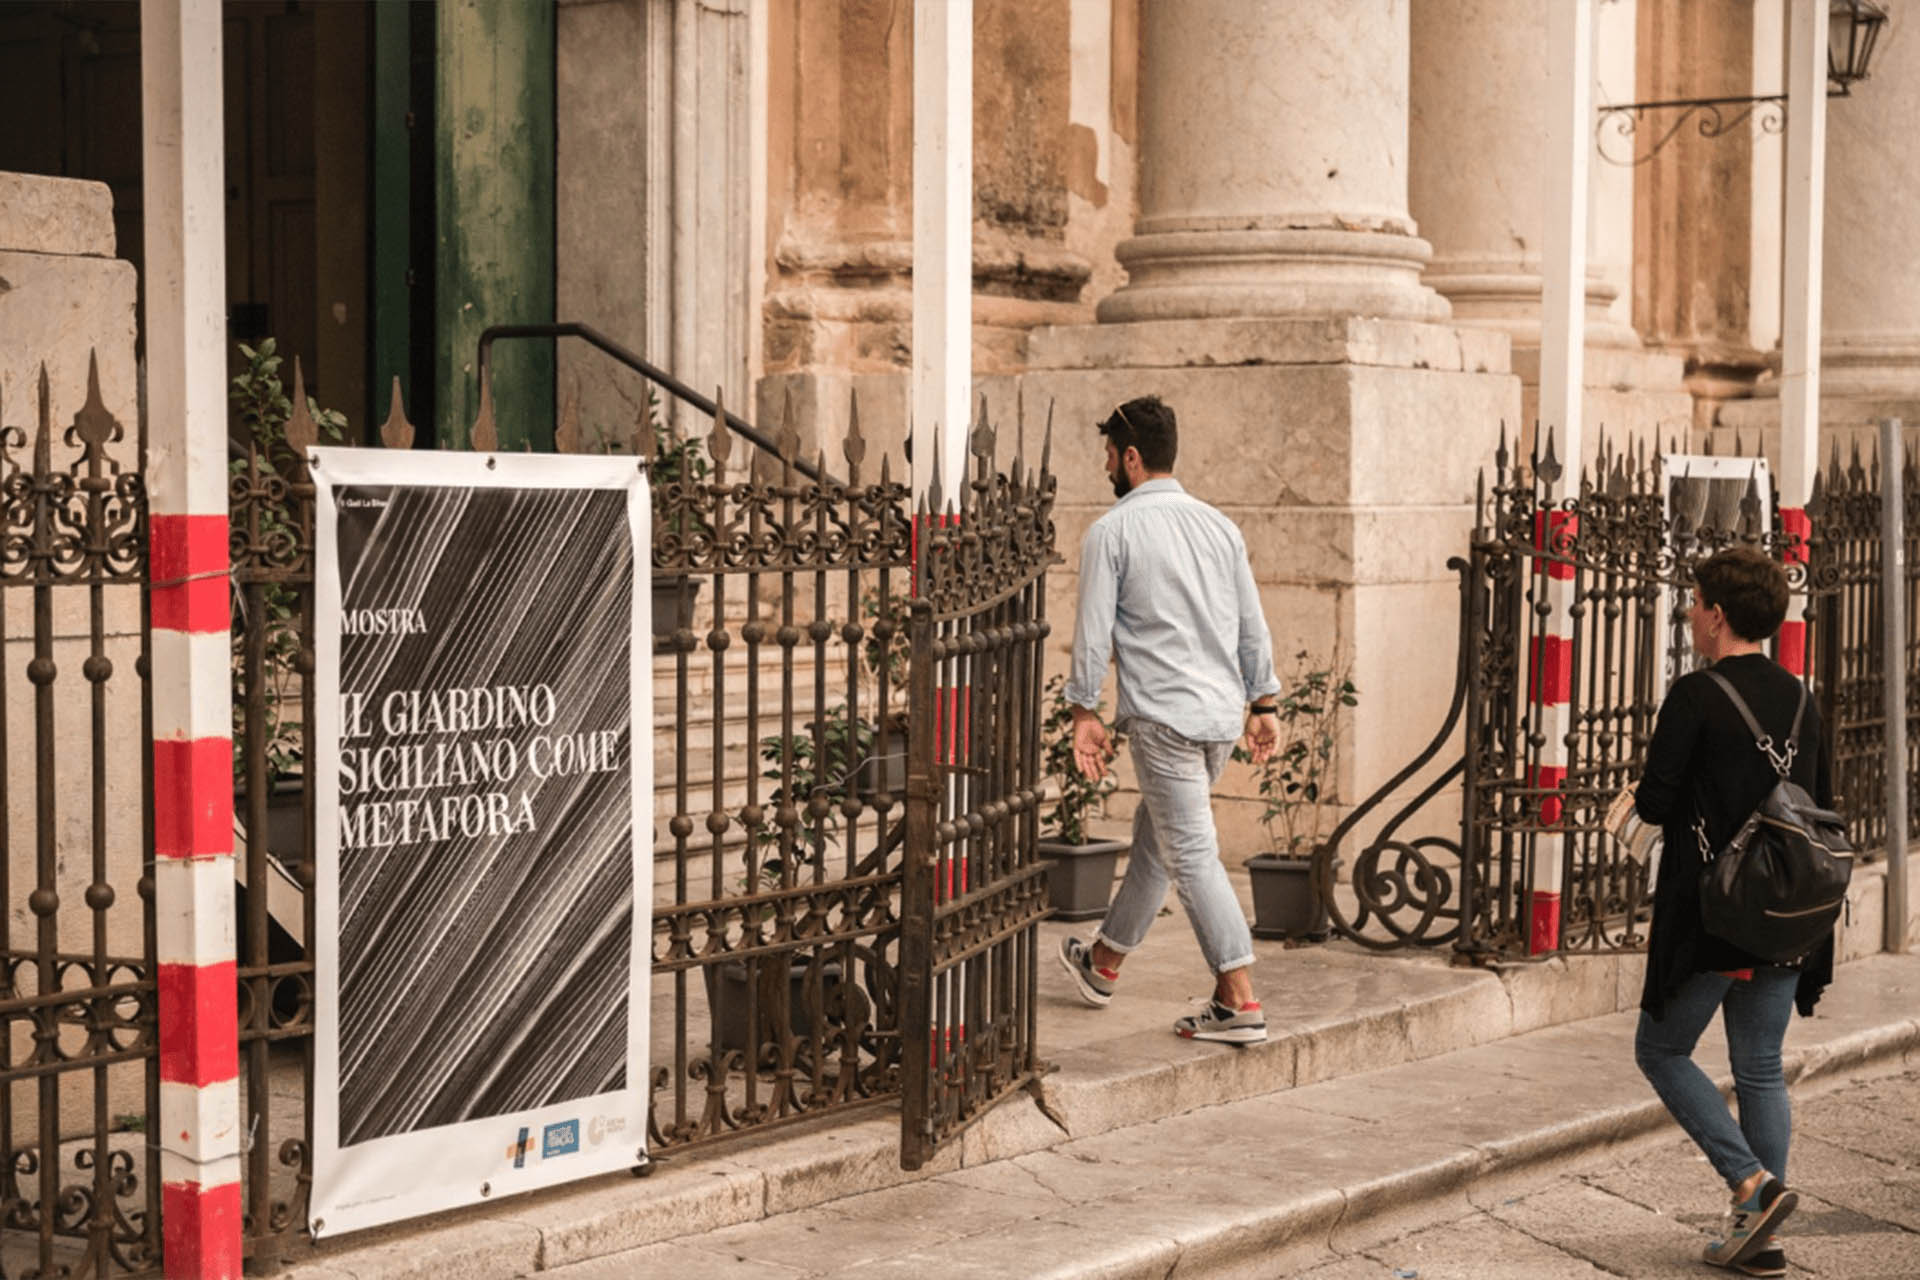 Comunicazione eventi culturali | Il Giardino Siciliano come Metafora | Goethe Institut